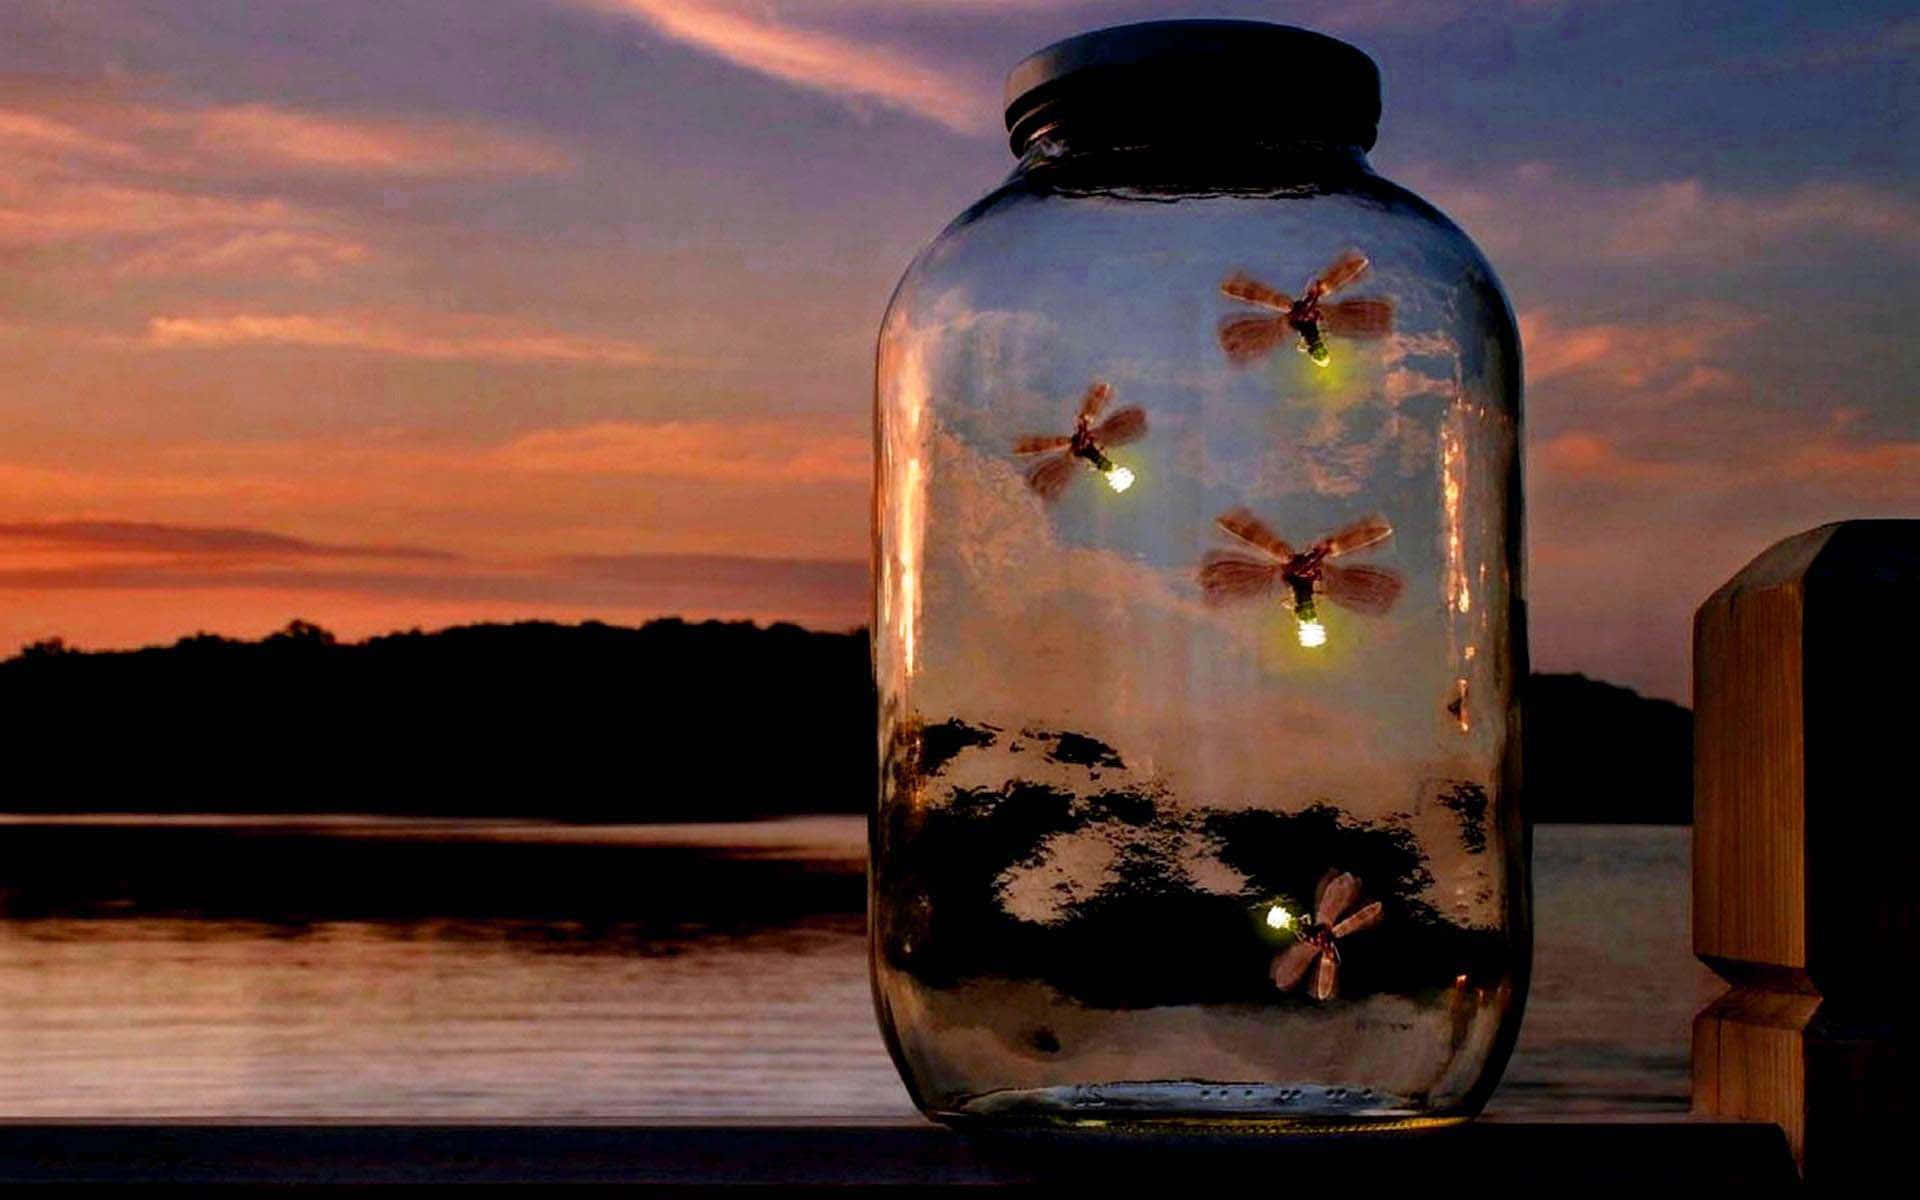 Einestrahlende Galaxie Von Glühwürmchen Erzeugt Eine Atemberaubende Lichtshow In Der Perfekten Sommernacht. Wallpaper